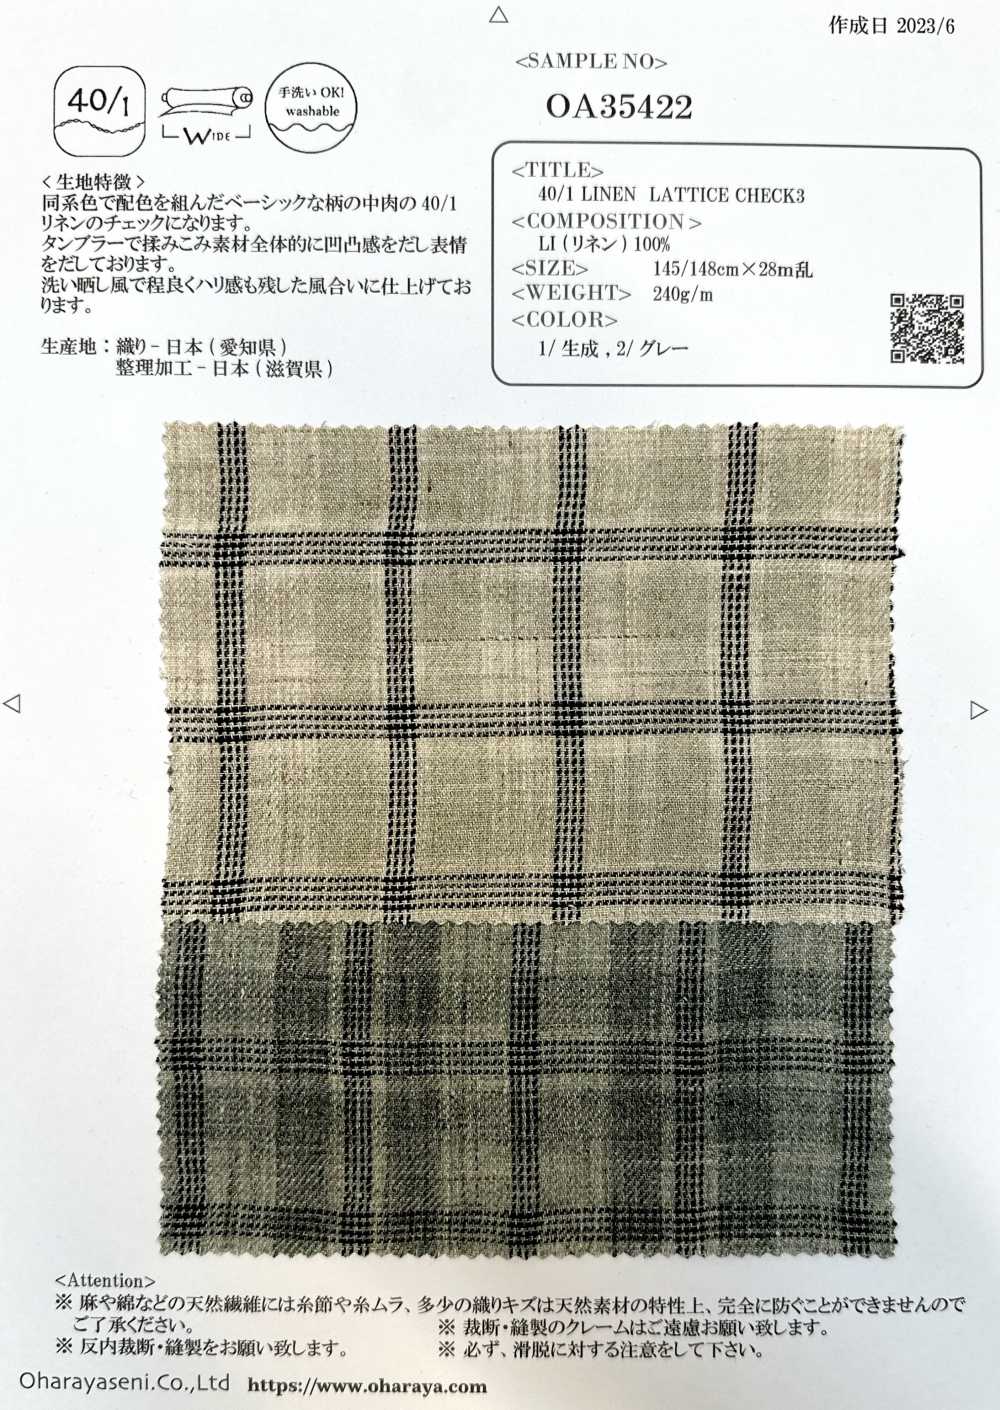 OA35422 VERIFICAÇÃO DE MALHA DE LINHO 40/13[Têxtil / Tecido] Oharayaseni